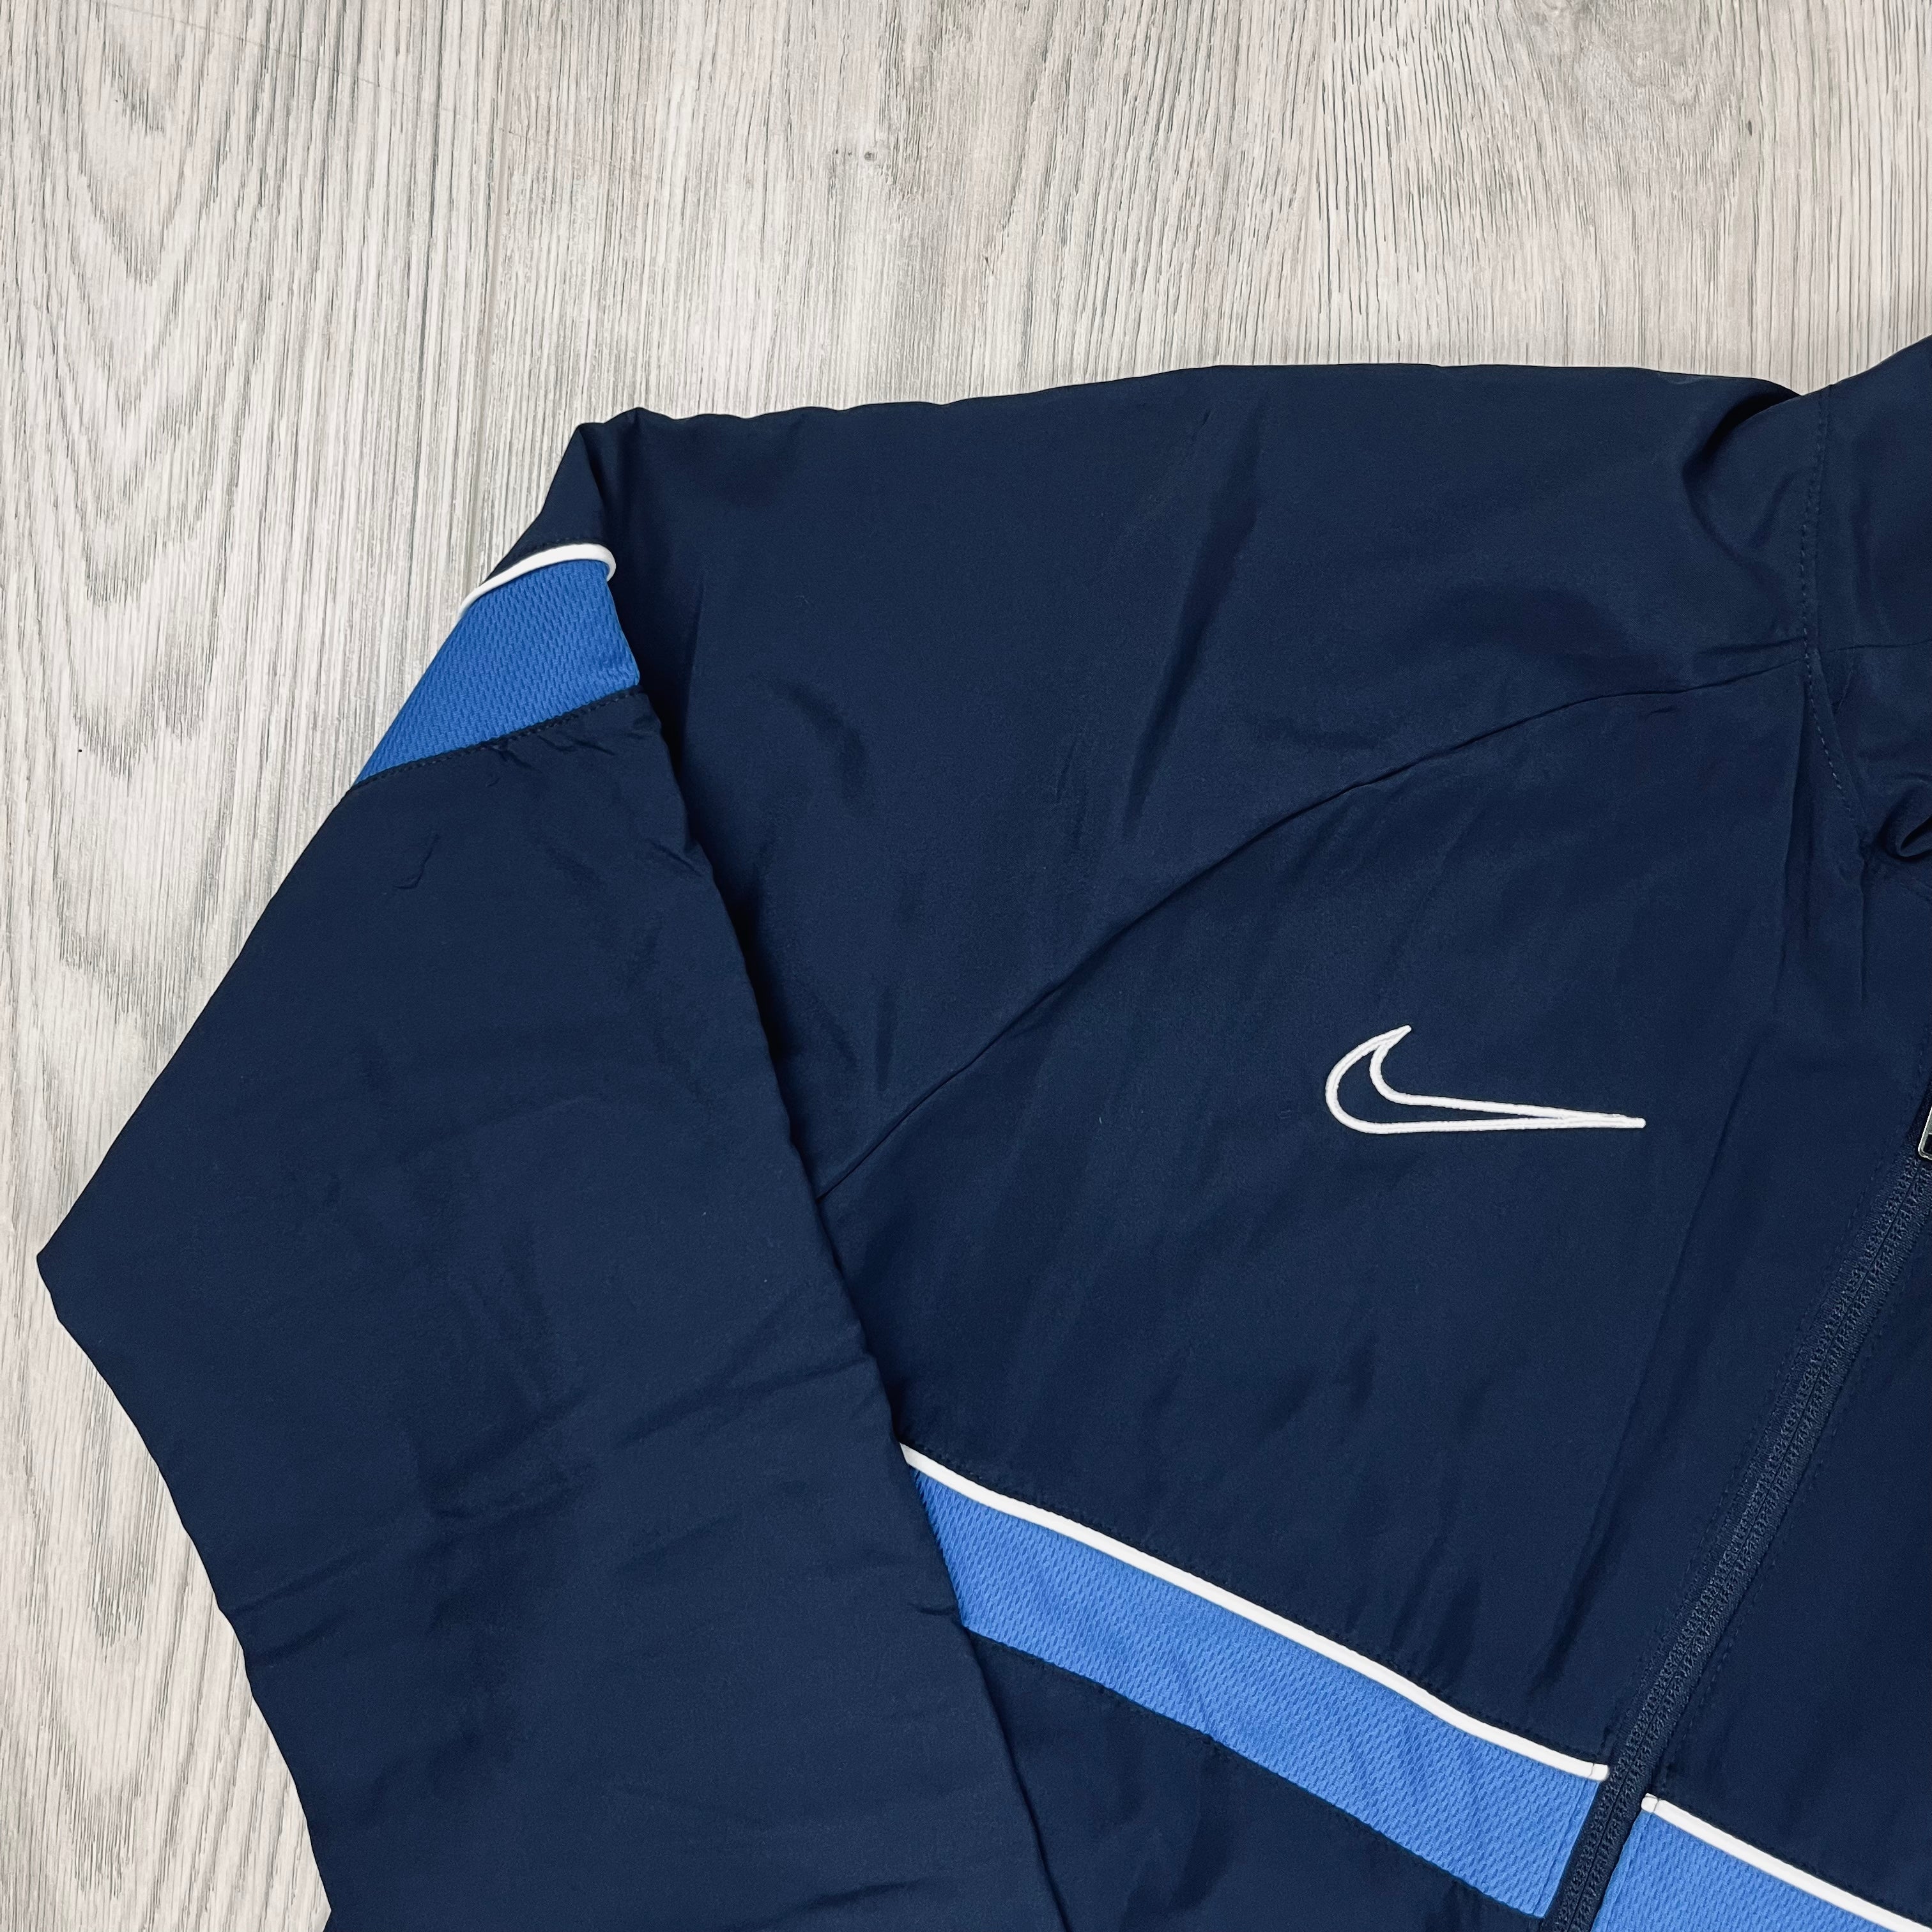 Nike Dri-Fit Track Jacket